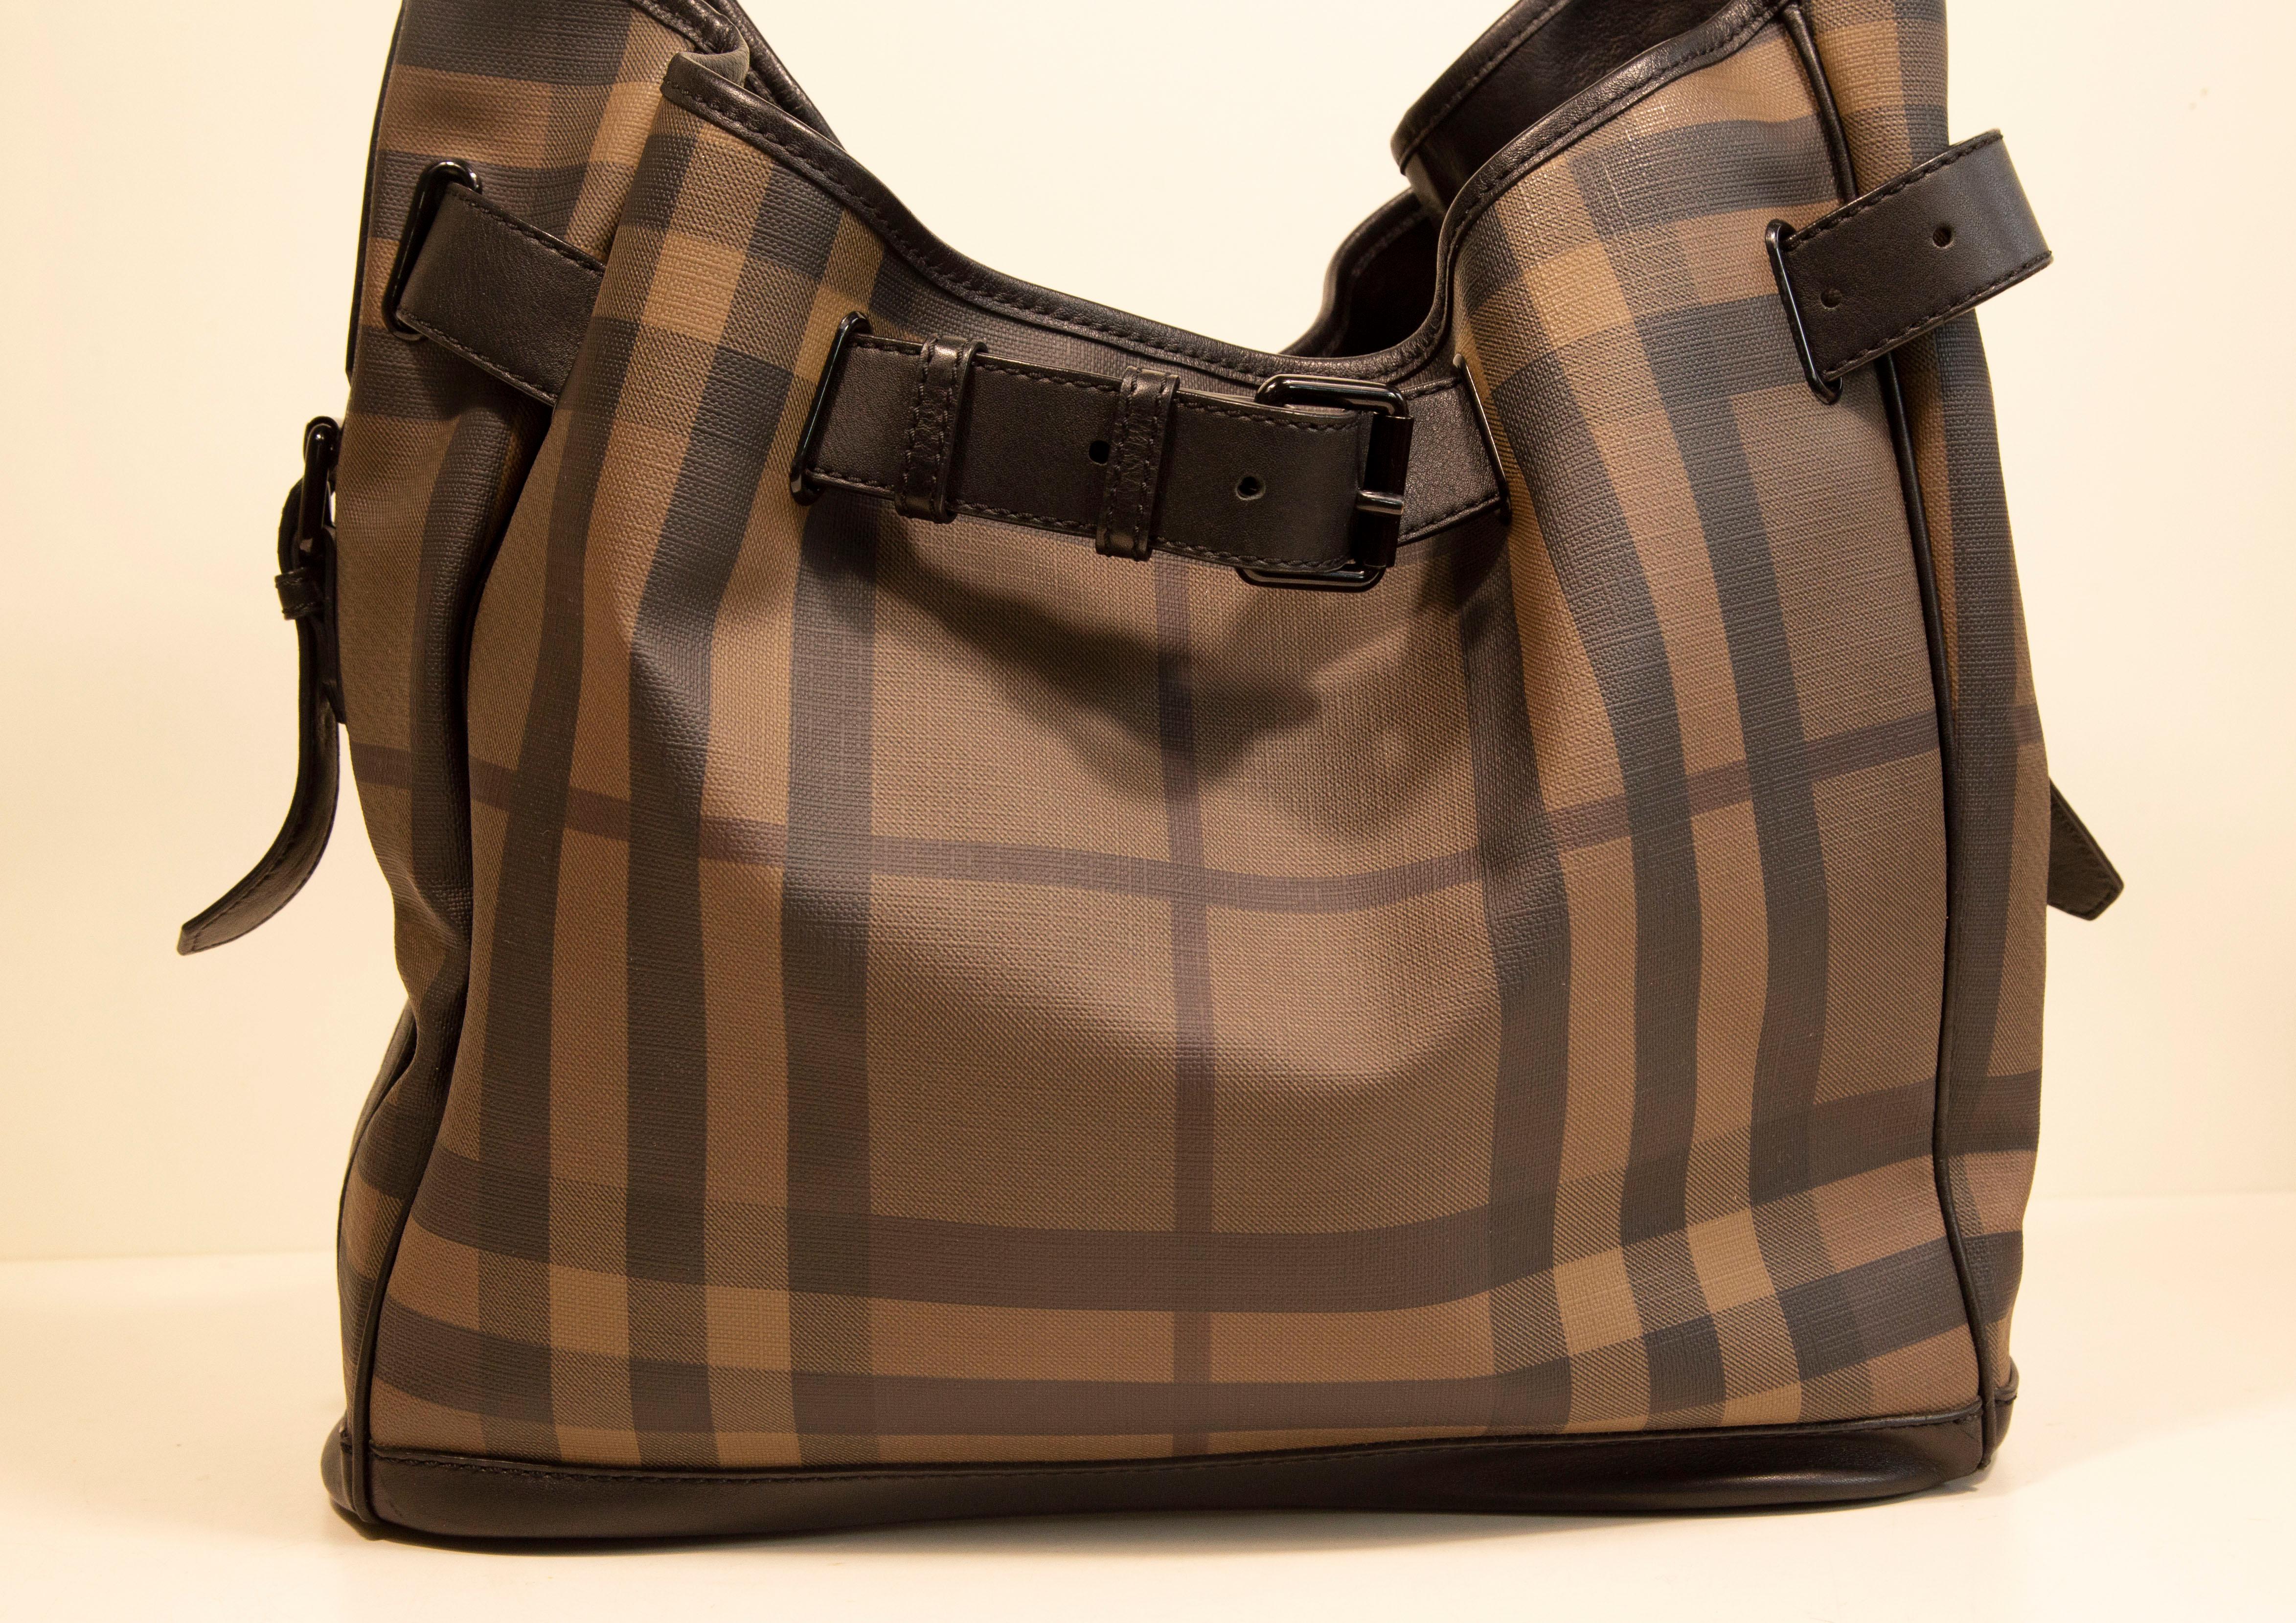 Un authentique sac à bandoulière Burberry. Le sac présente un motif noir/gris  extérieur en toile à carreaux, garniture en cuir noir et accessoires de couleur noire. L'intérieur est doublé de tissu noir et est séparé en deux compartiments principaux